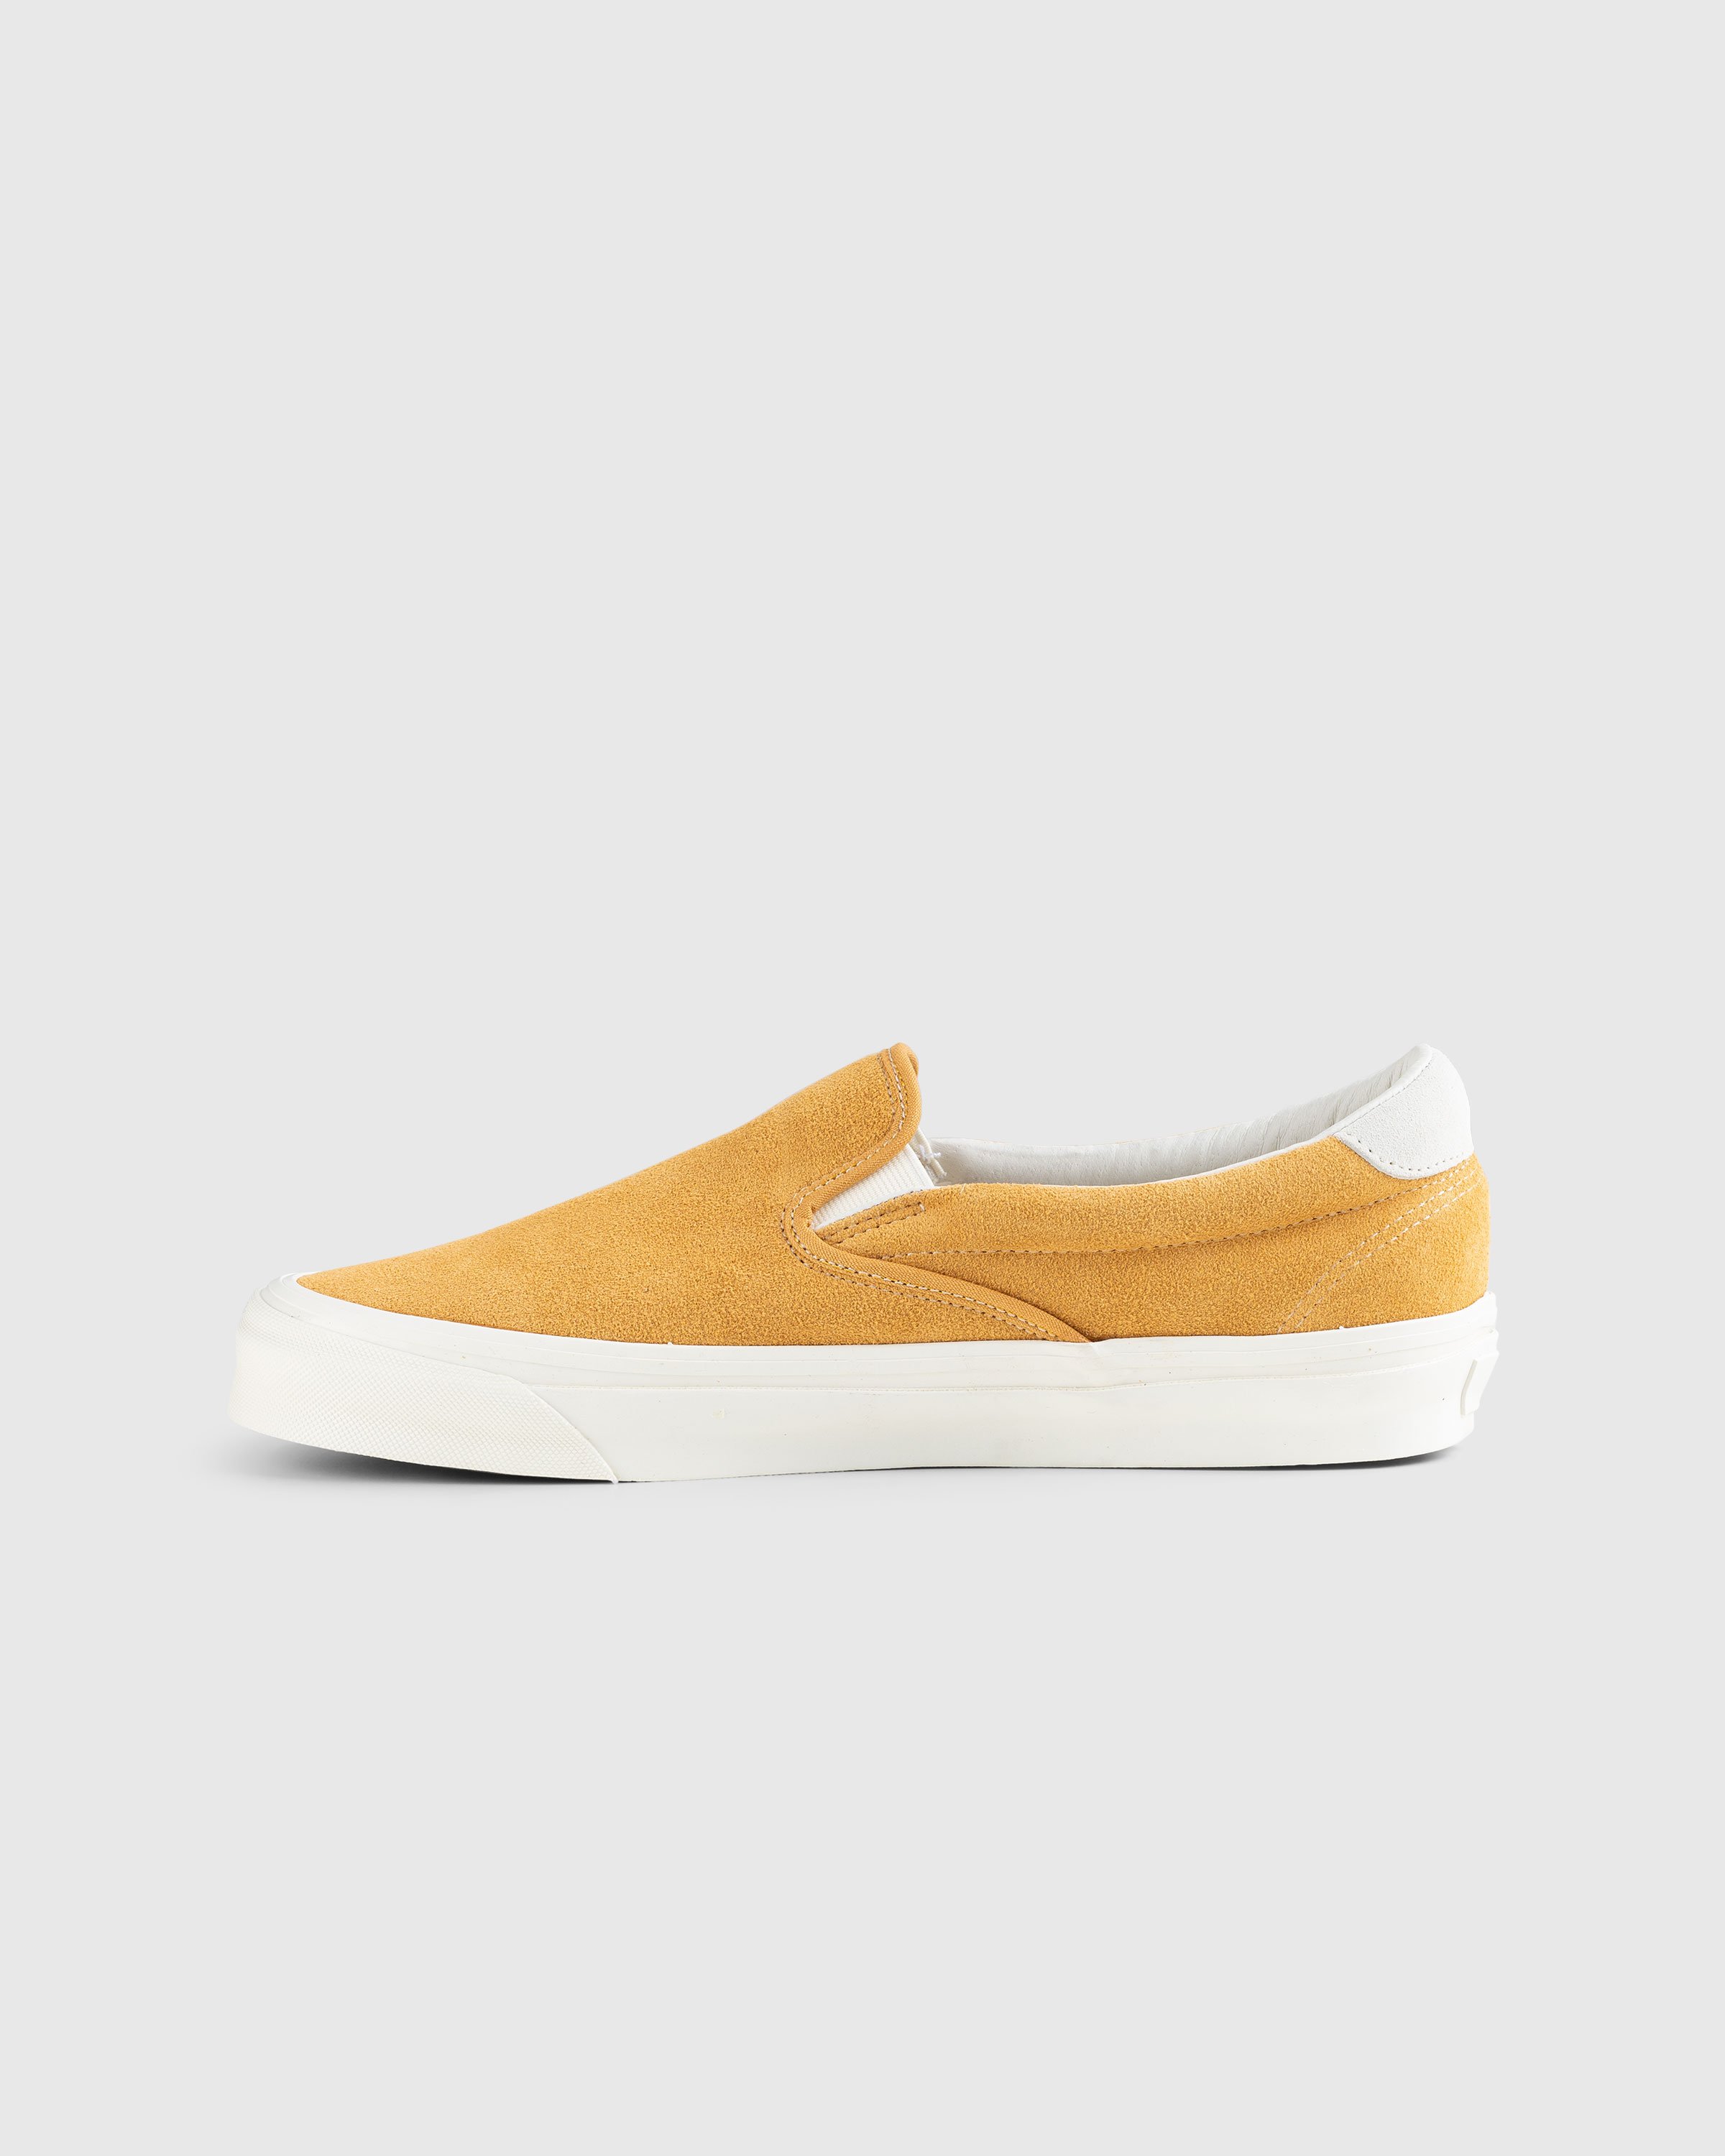 Vans - OG Slip-On 59 LX Suede Yellow - Footwear - Yellow - Image 2